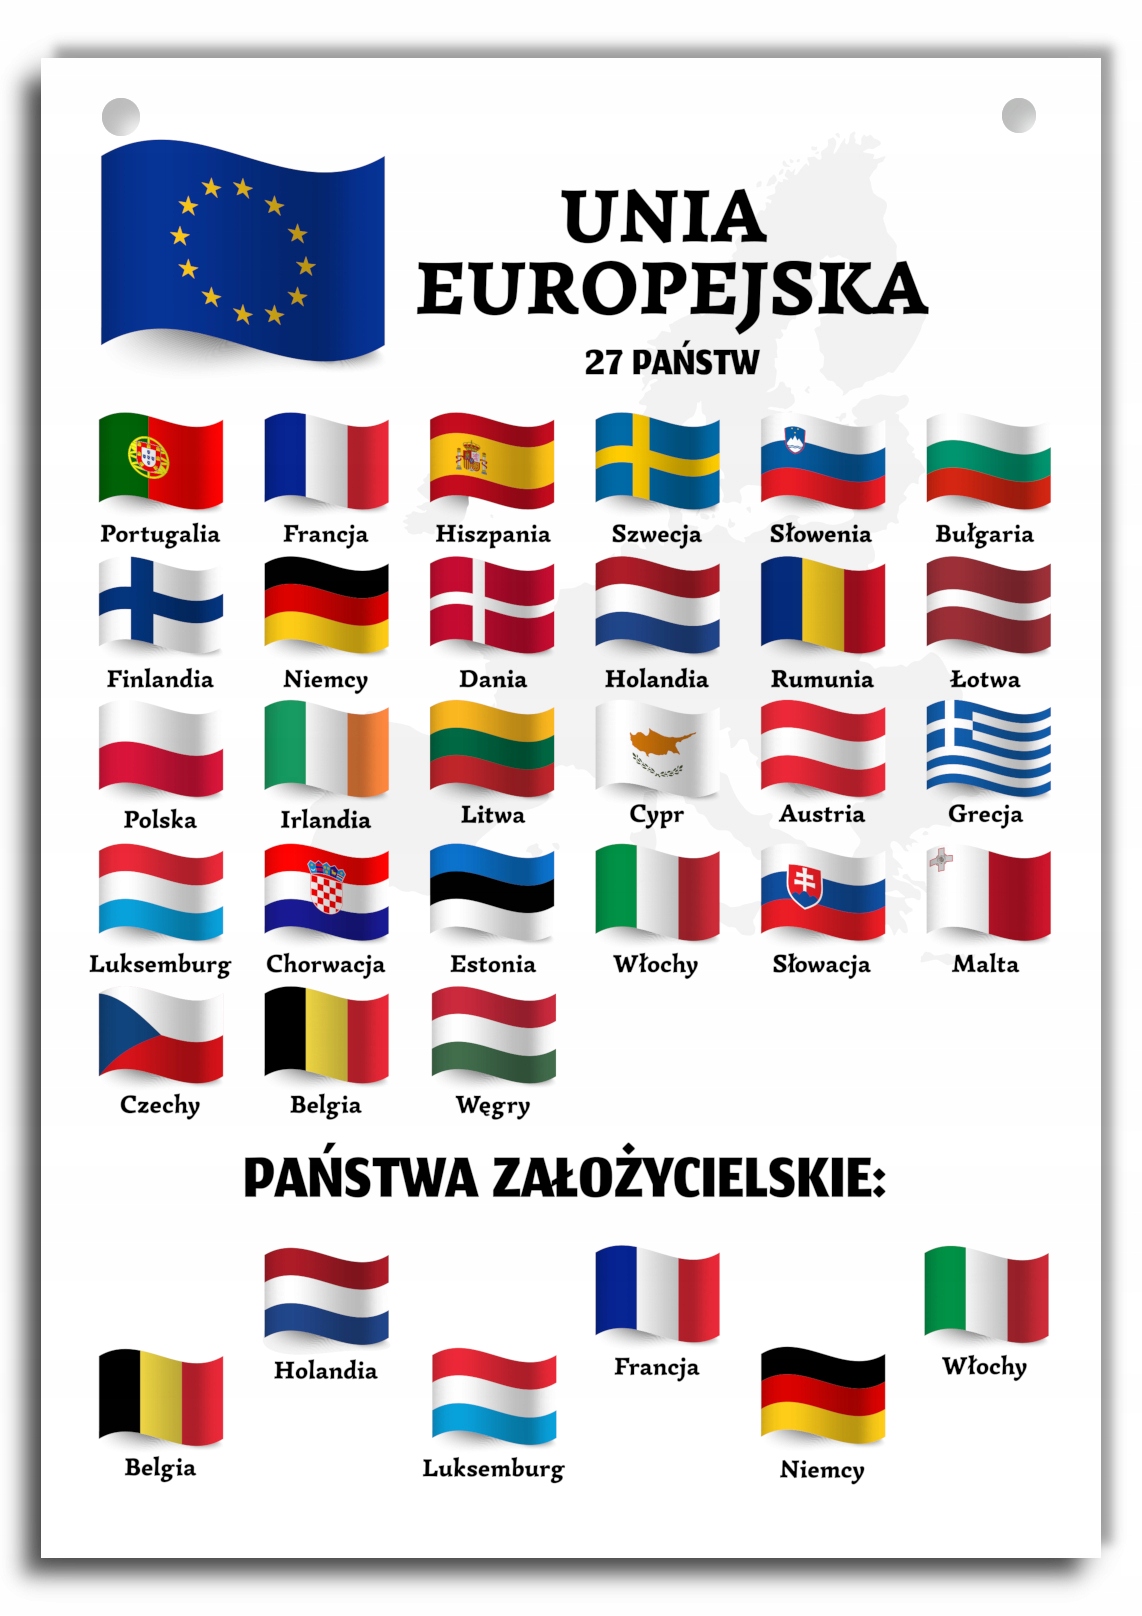 Europa Panstwa I Stolice Pdf Plansza dydaktyczna - państwa Unii Europejskiej A3 timoteo.pl